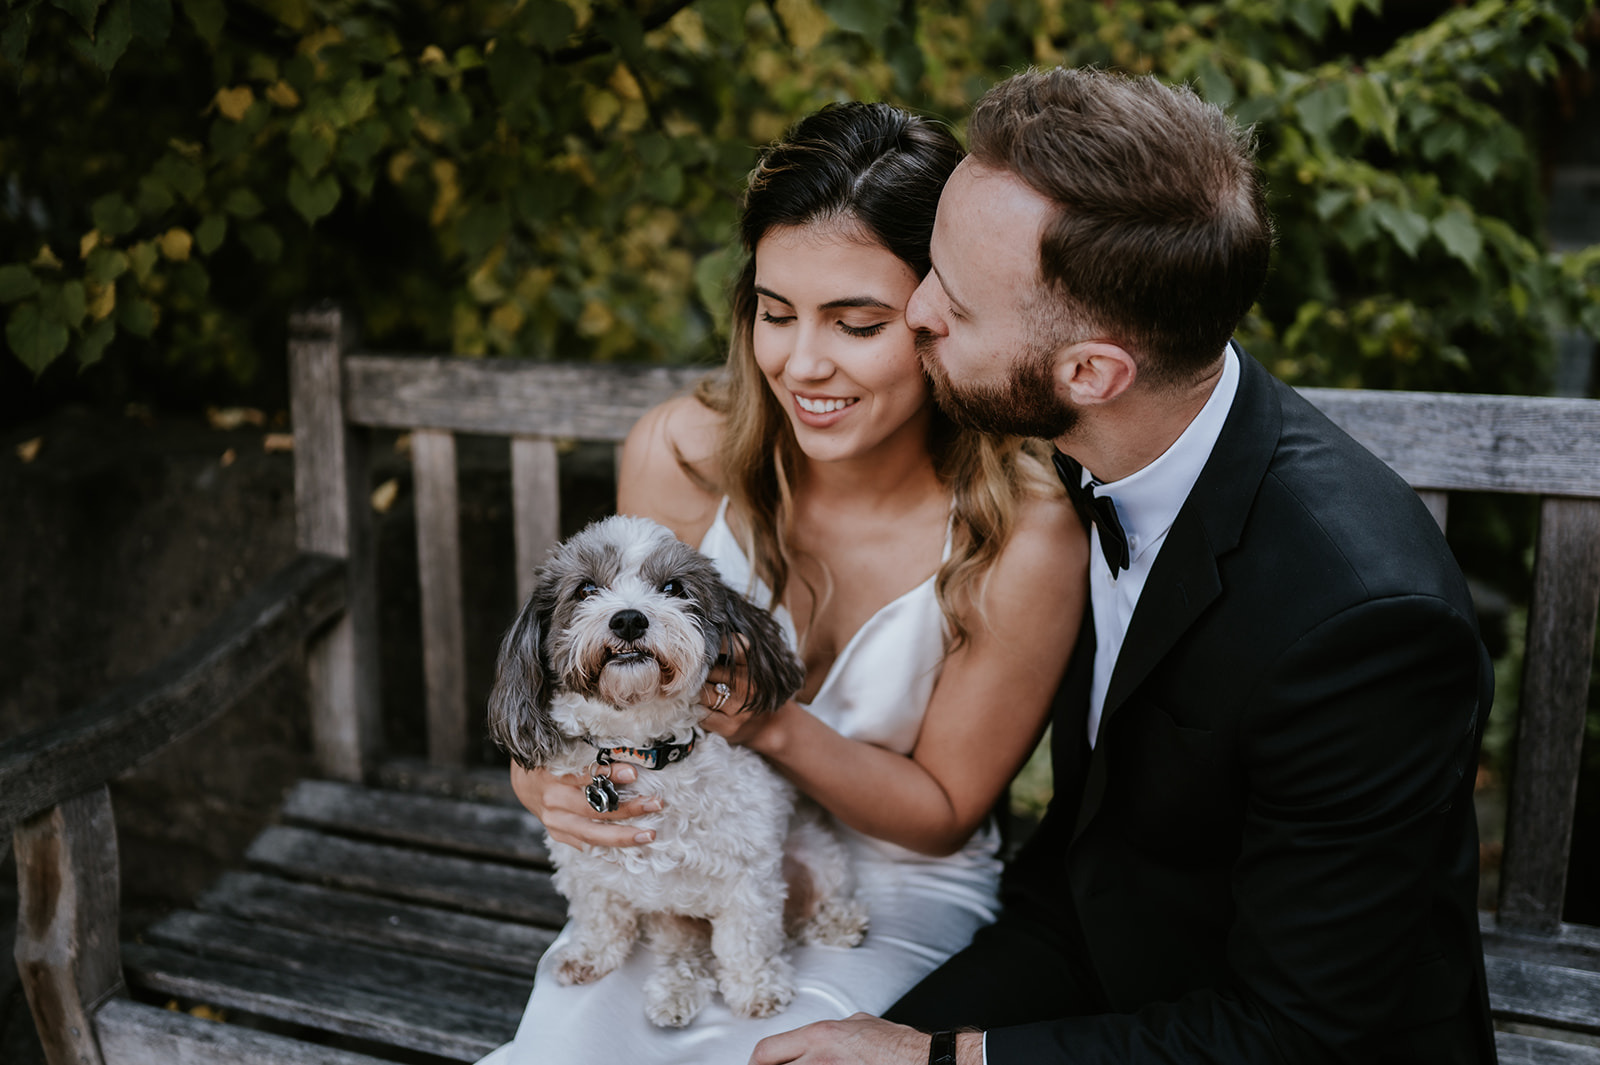 Wedding Couple with dog